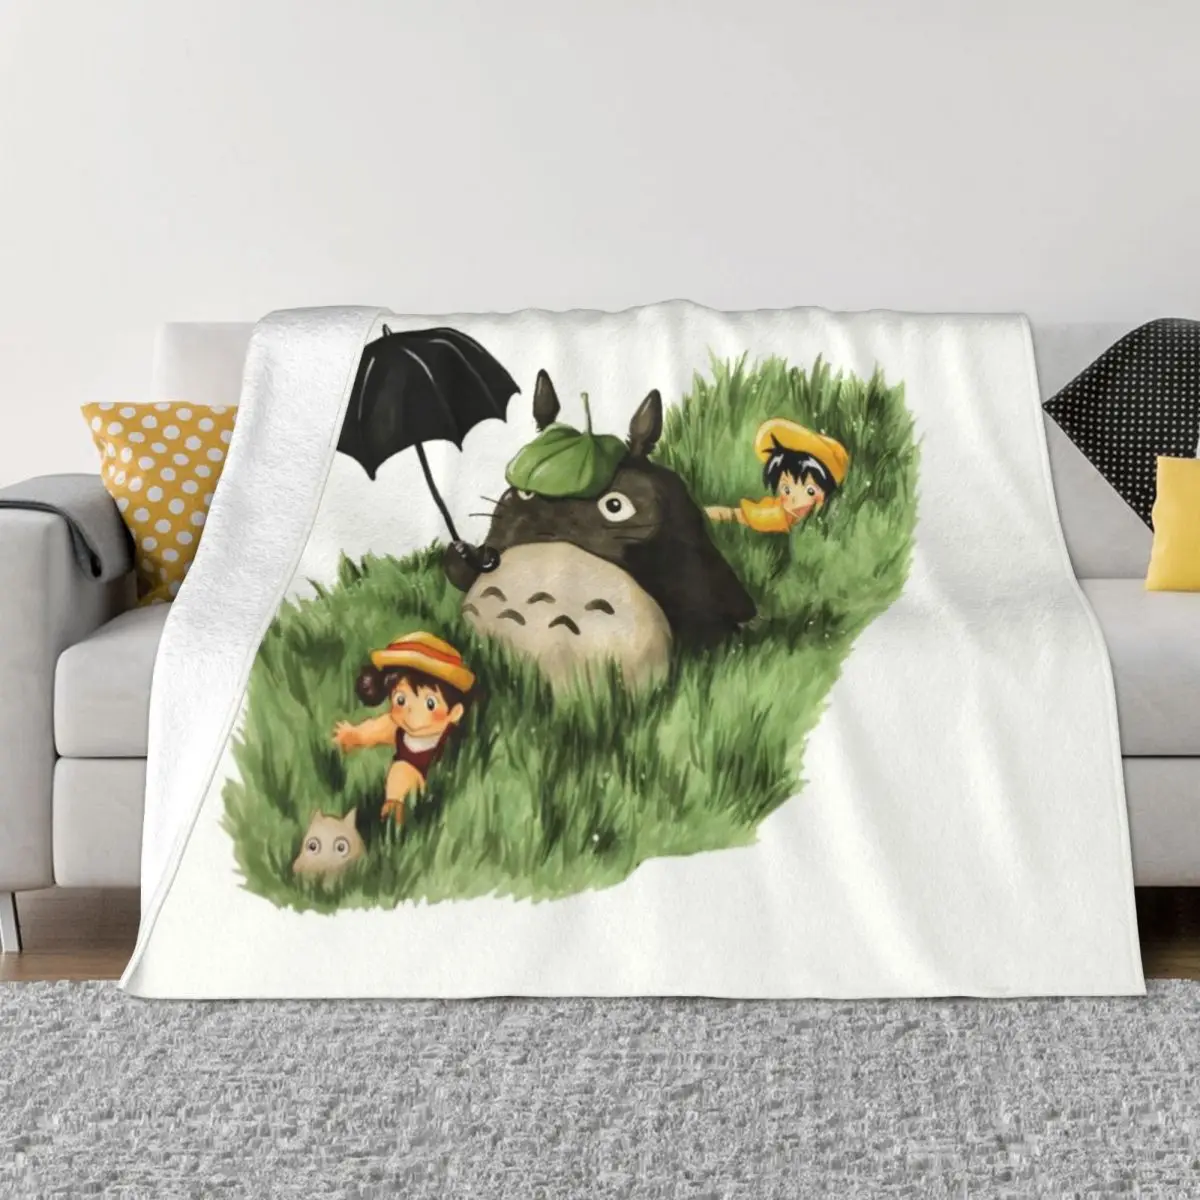 

Мультяшное фланелевое одеяло Тоторо с рисунком из аниме, флисовые одеяла в стиле Мой сосед для дивана, детские подарочные одеяла для девочек и мальчиков, мягкое милое одеяло, покрывало для кровати